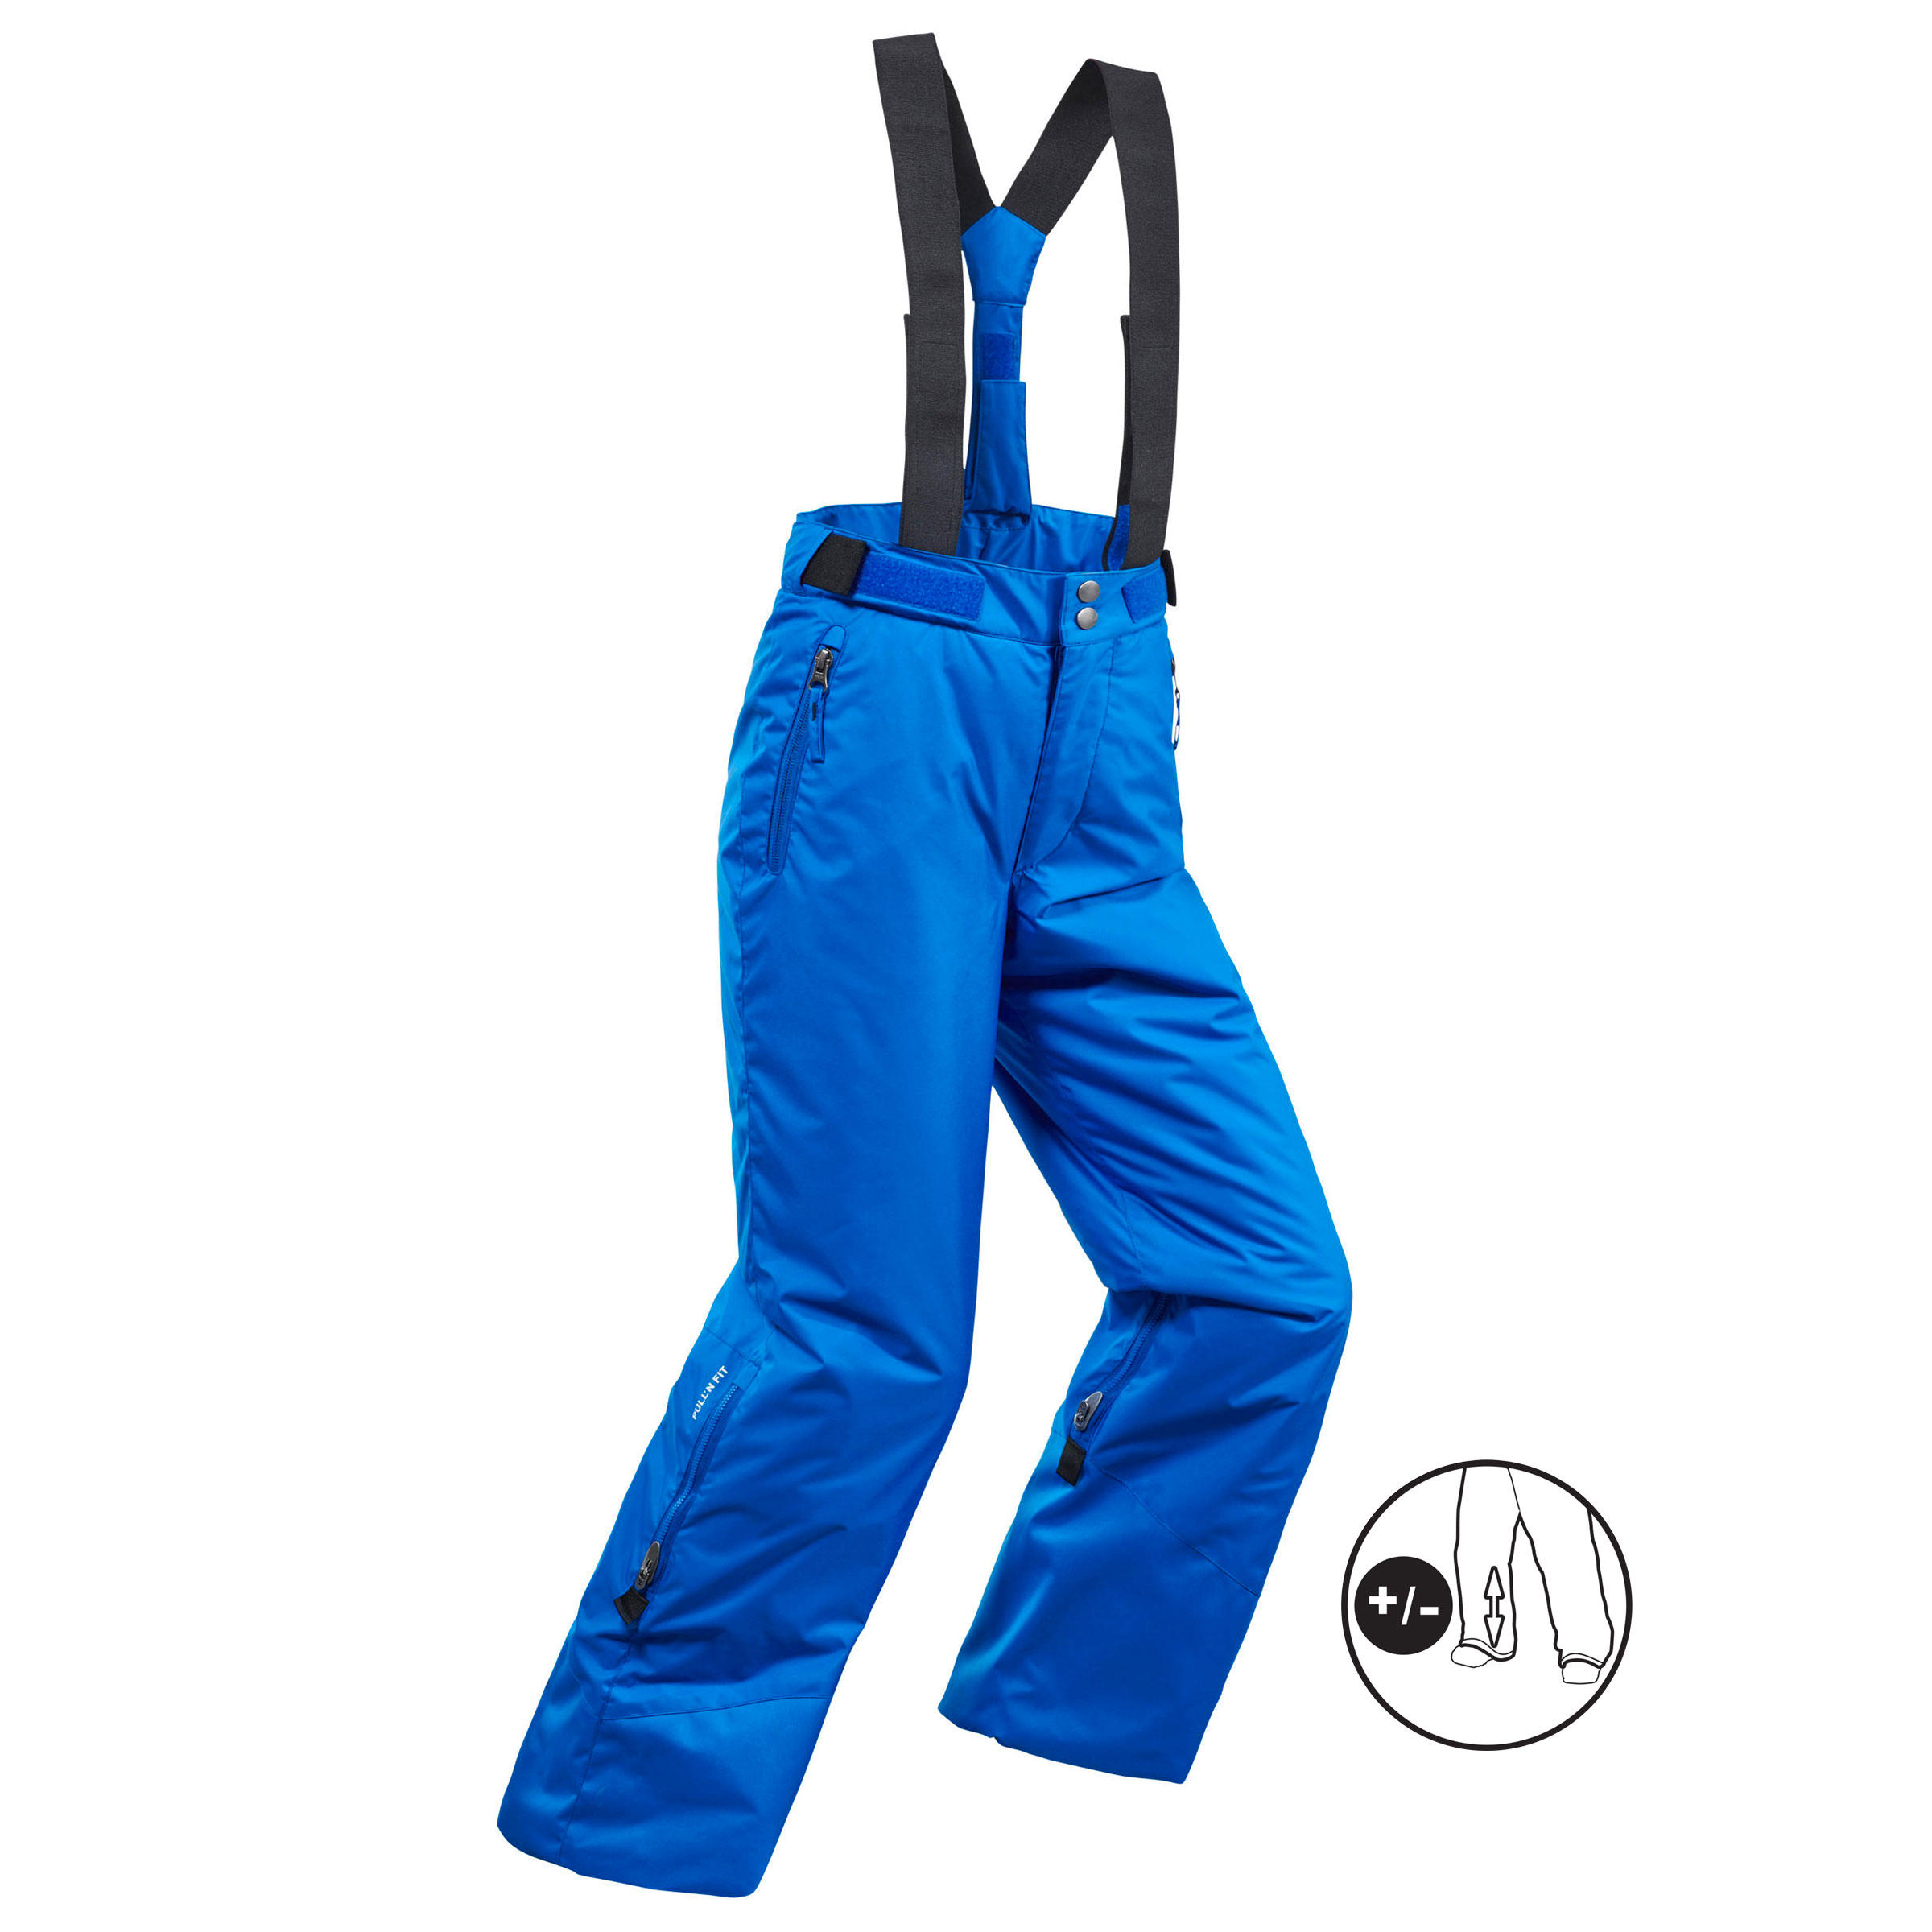 Pantalon călduros impermeabil schi PNF500 Albastru Băieți decathlon.ro  Imbracaminte schi copii